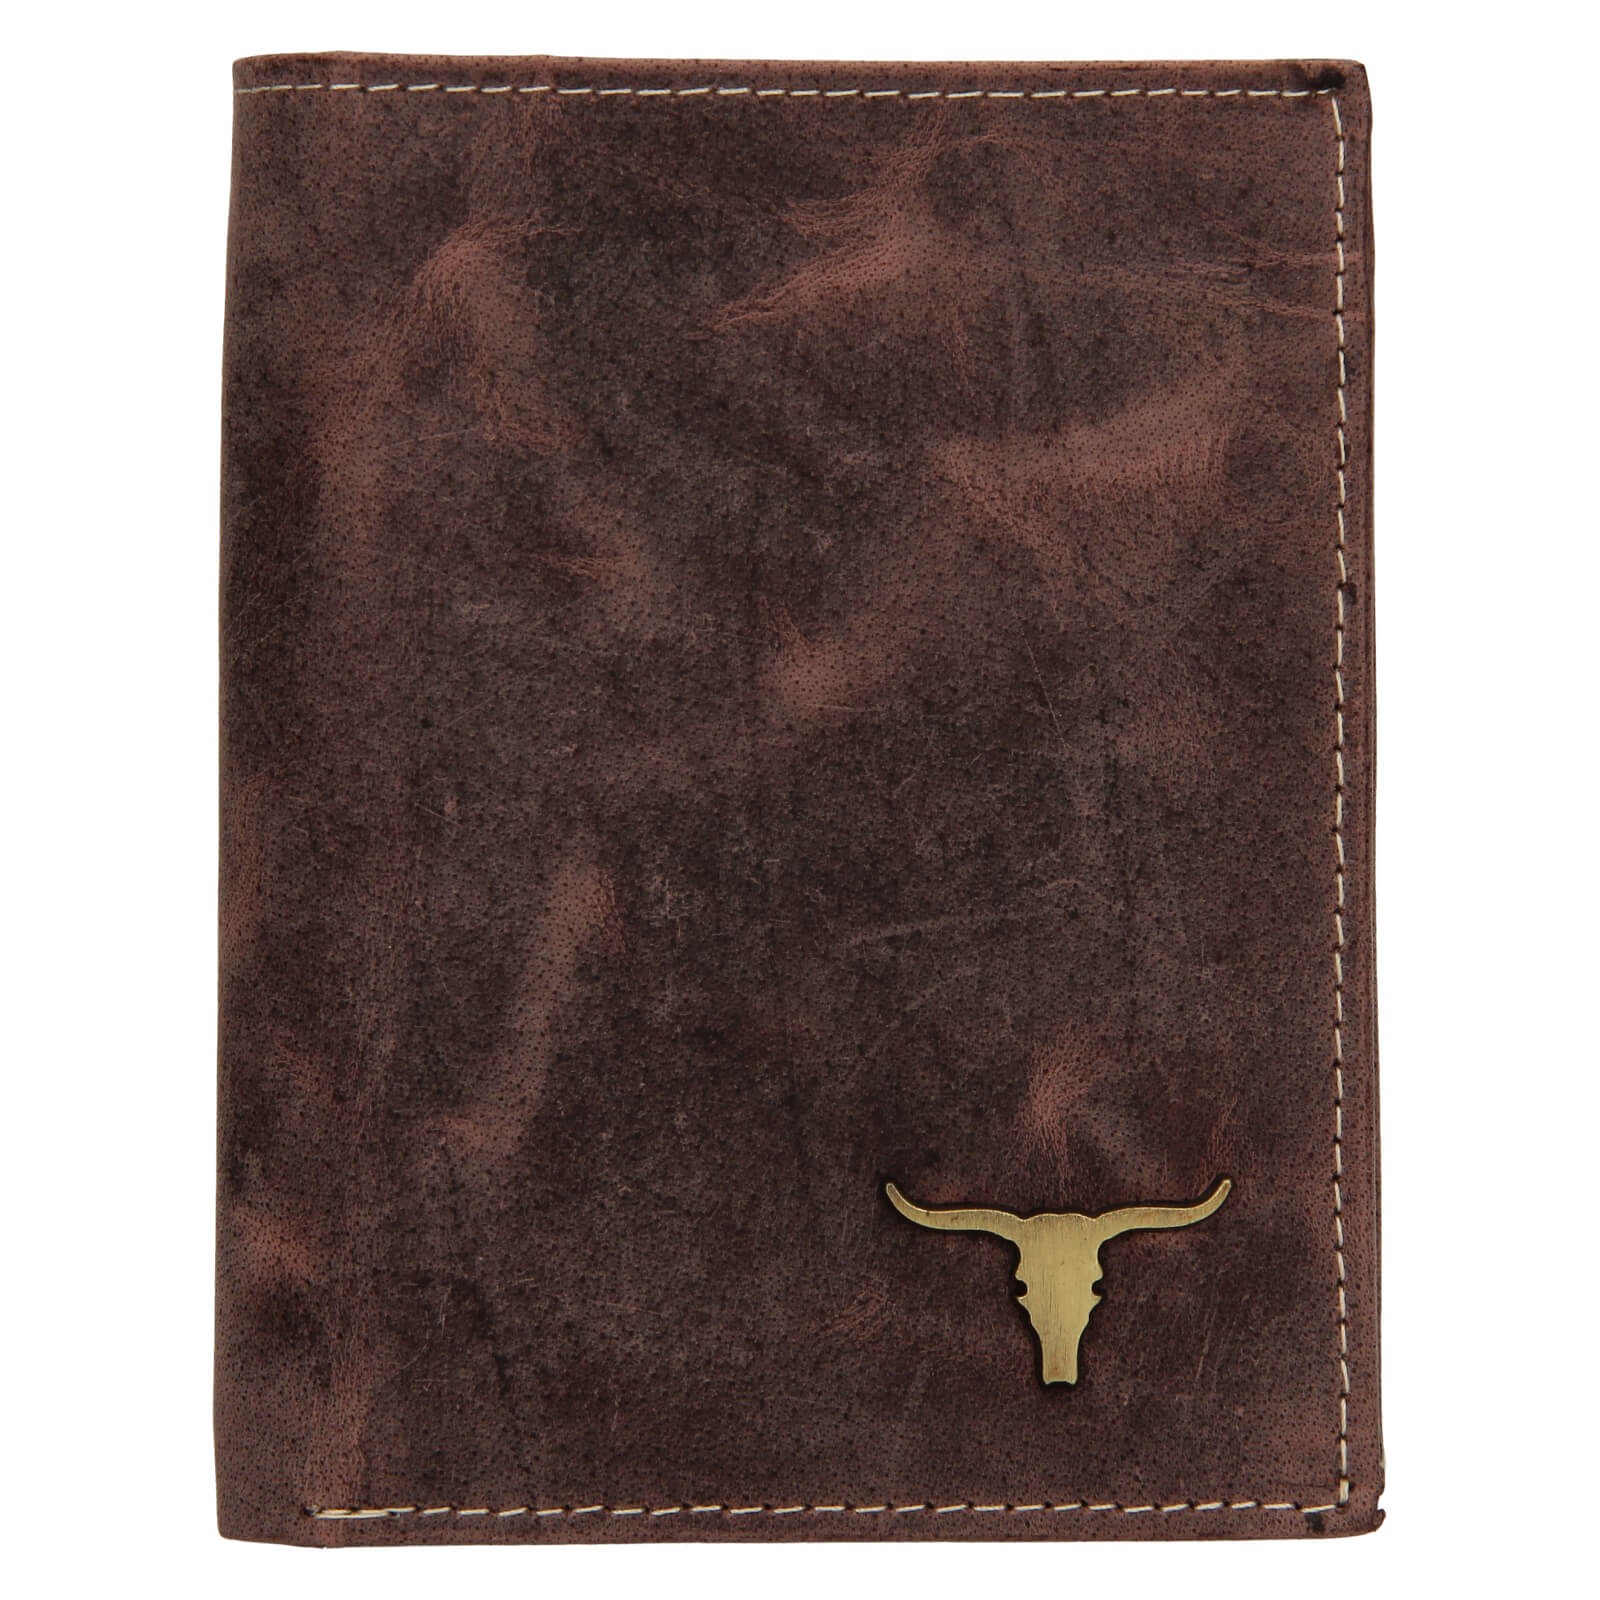 Pánská kožená peněženka Wild Buffalo Štěpán - hnědá